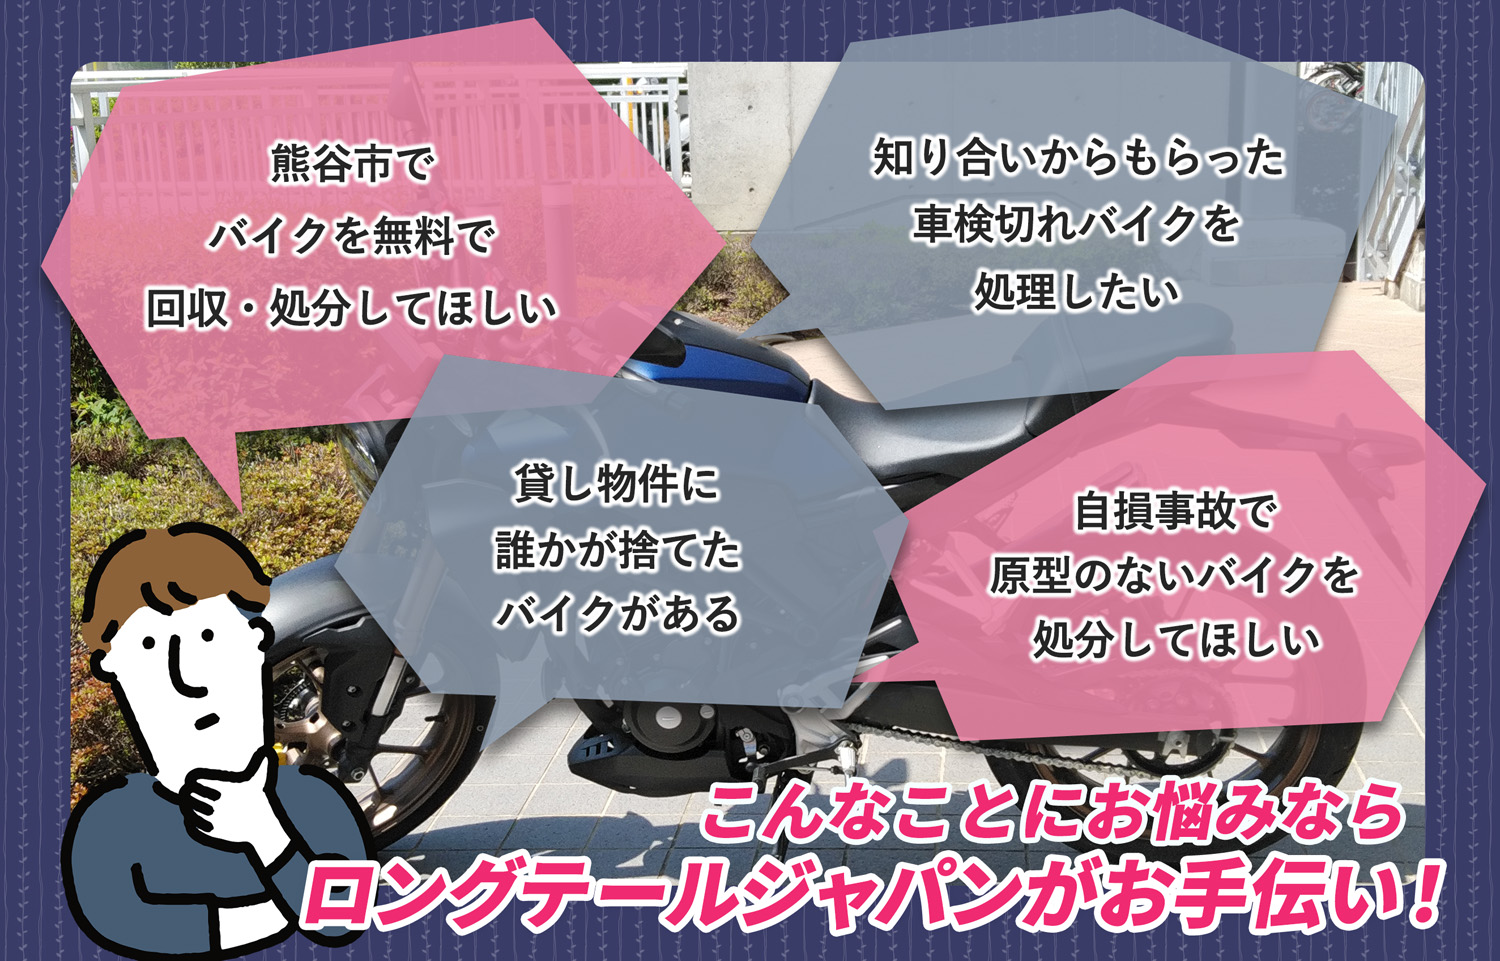 熊谷市でこんなバイクの処分にお困りでしたらバイク無料回収処分隊がお手伝いいたします。